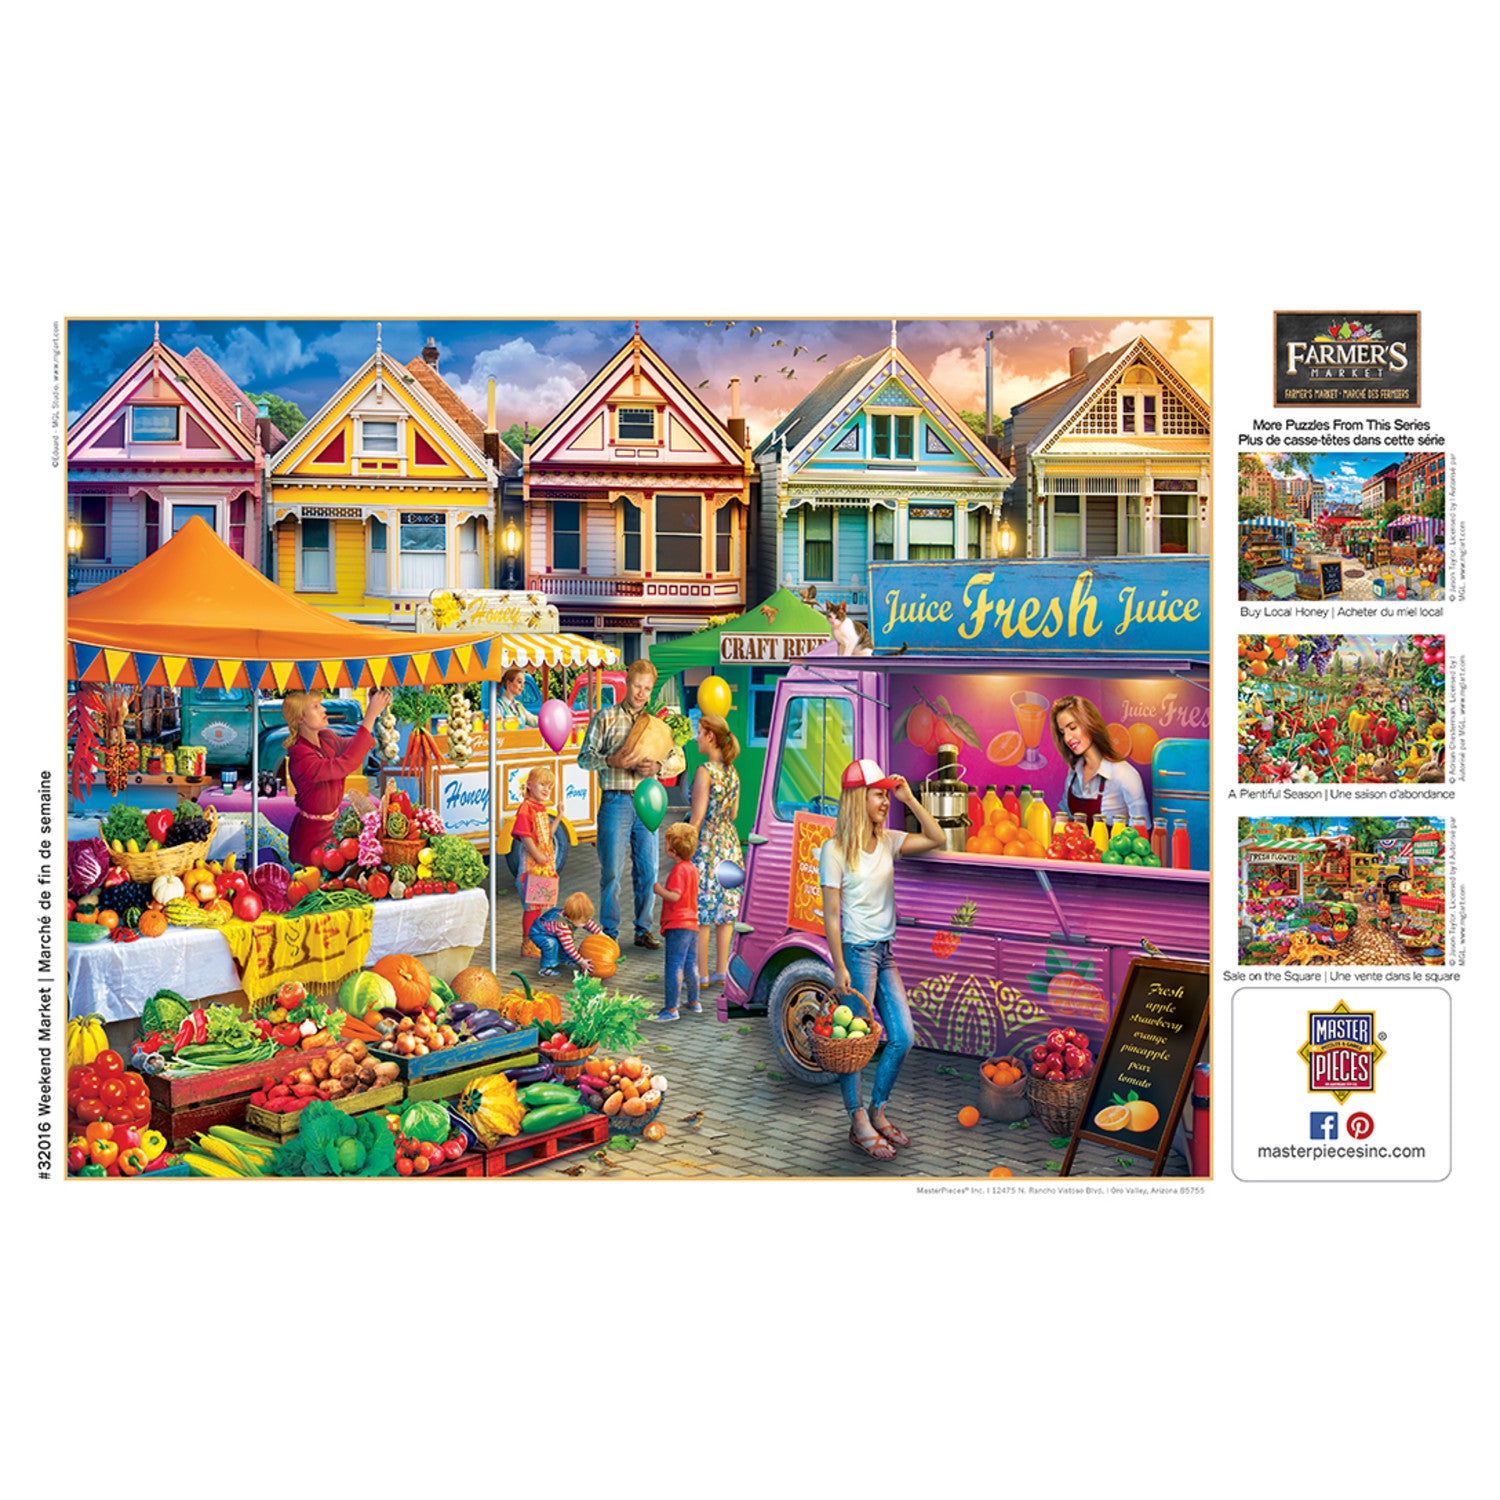 Farmer's Market - Weekend Market 750 Piece Jigsaw Puzzle